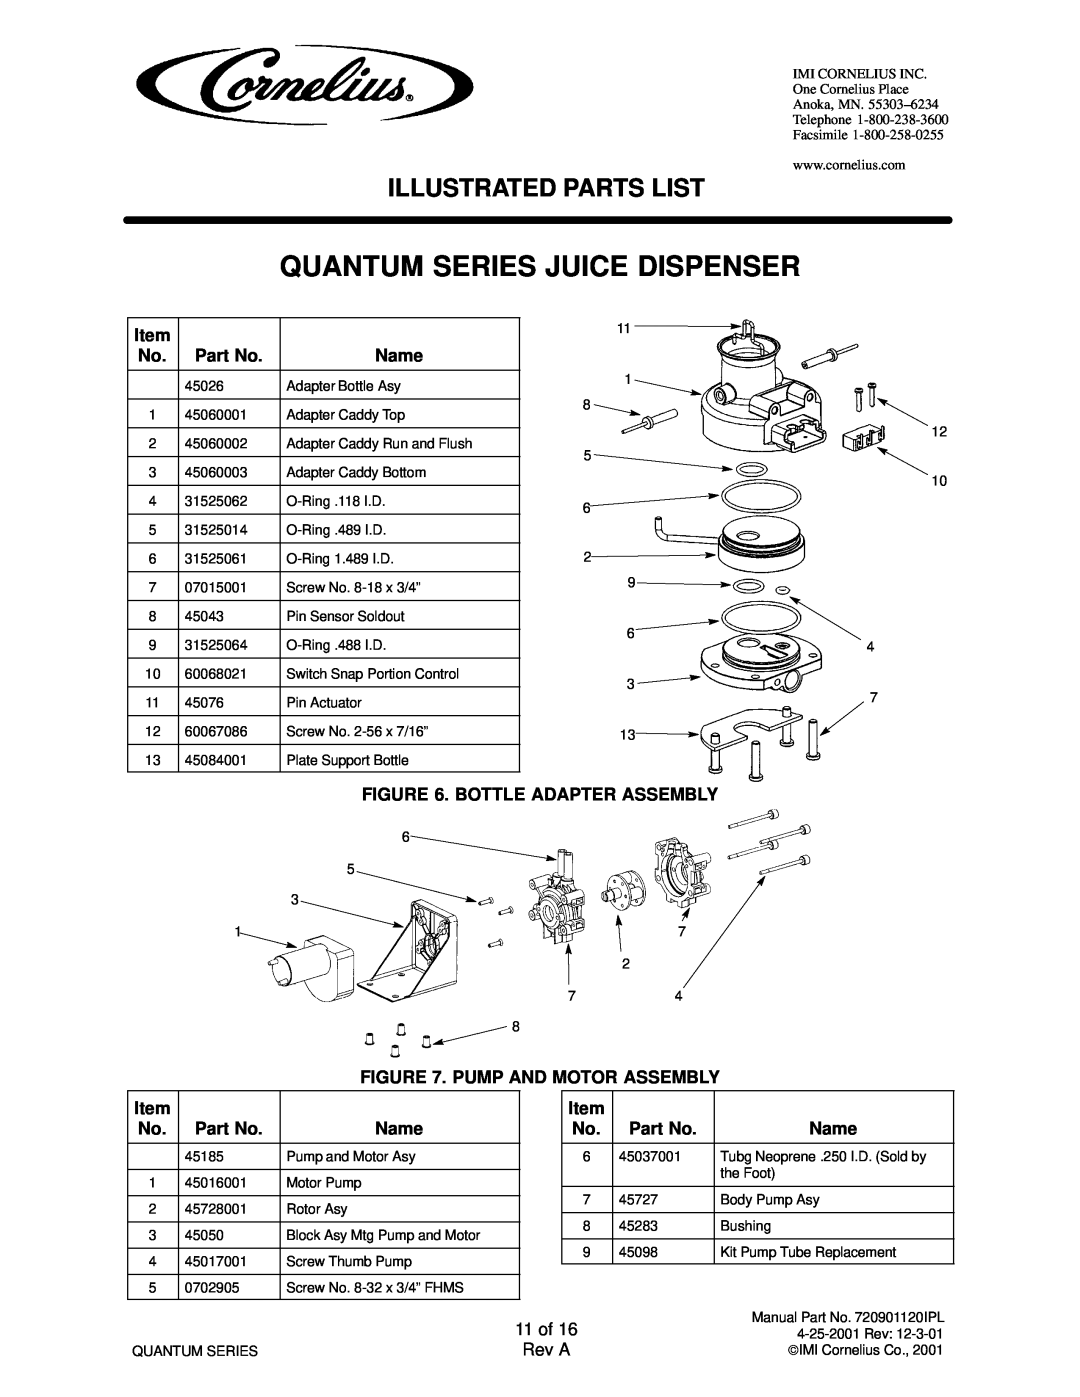 Cornelius QUANTUM SERIES service manual Quantum Series Juice Dispenser, Illustrated Parts List 